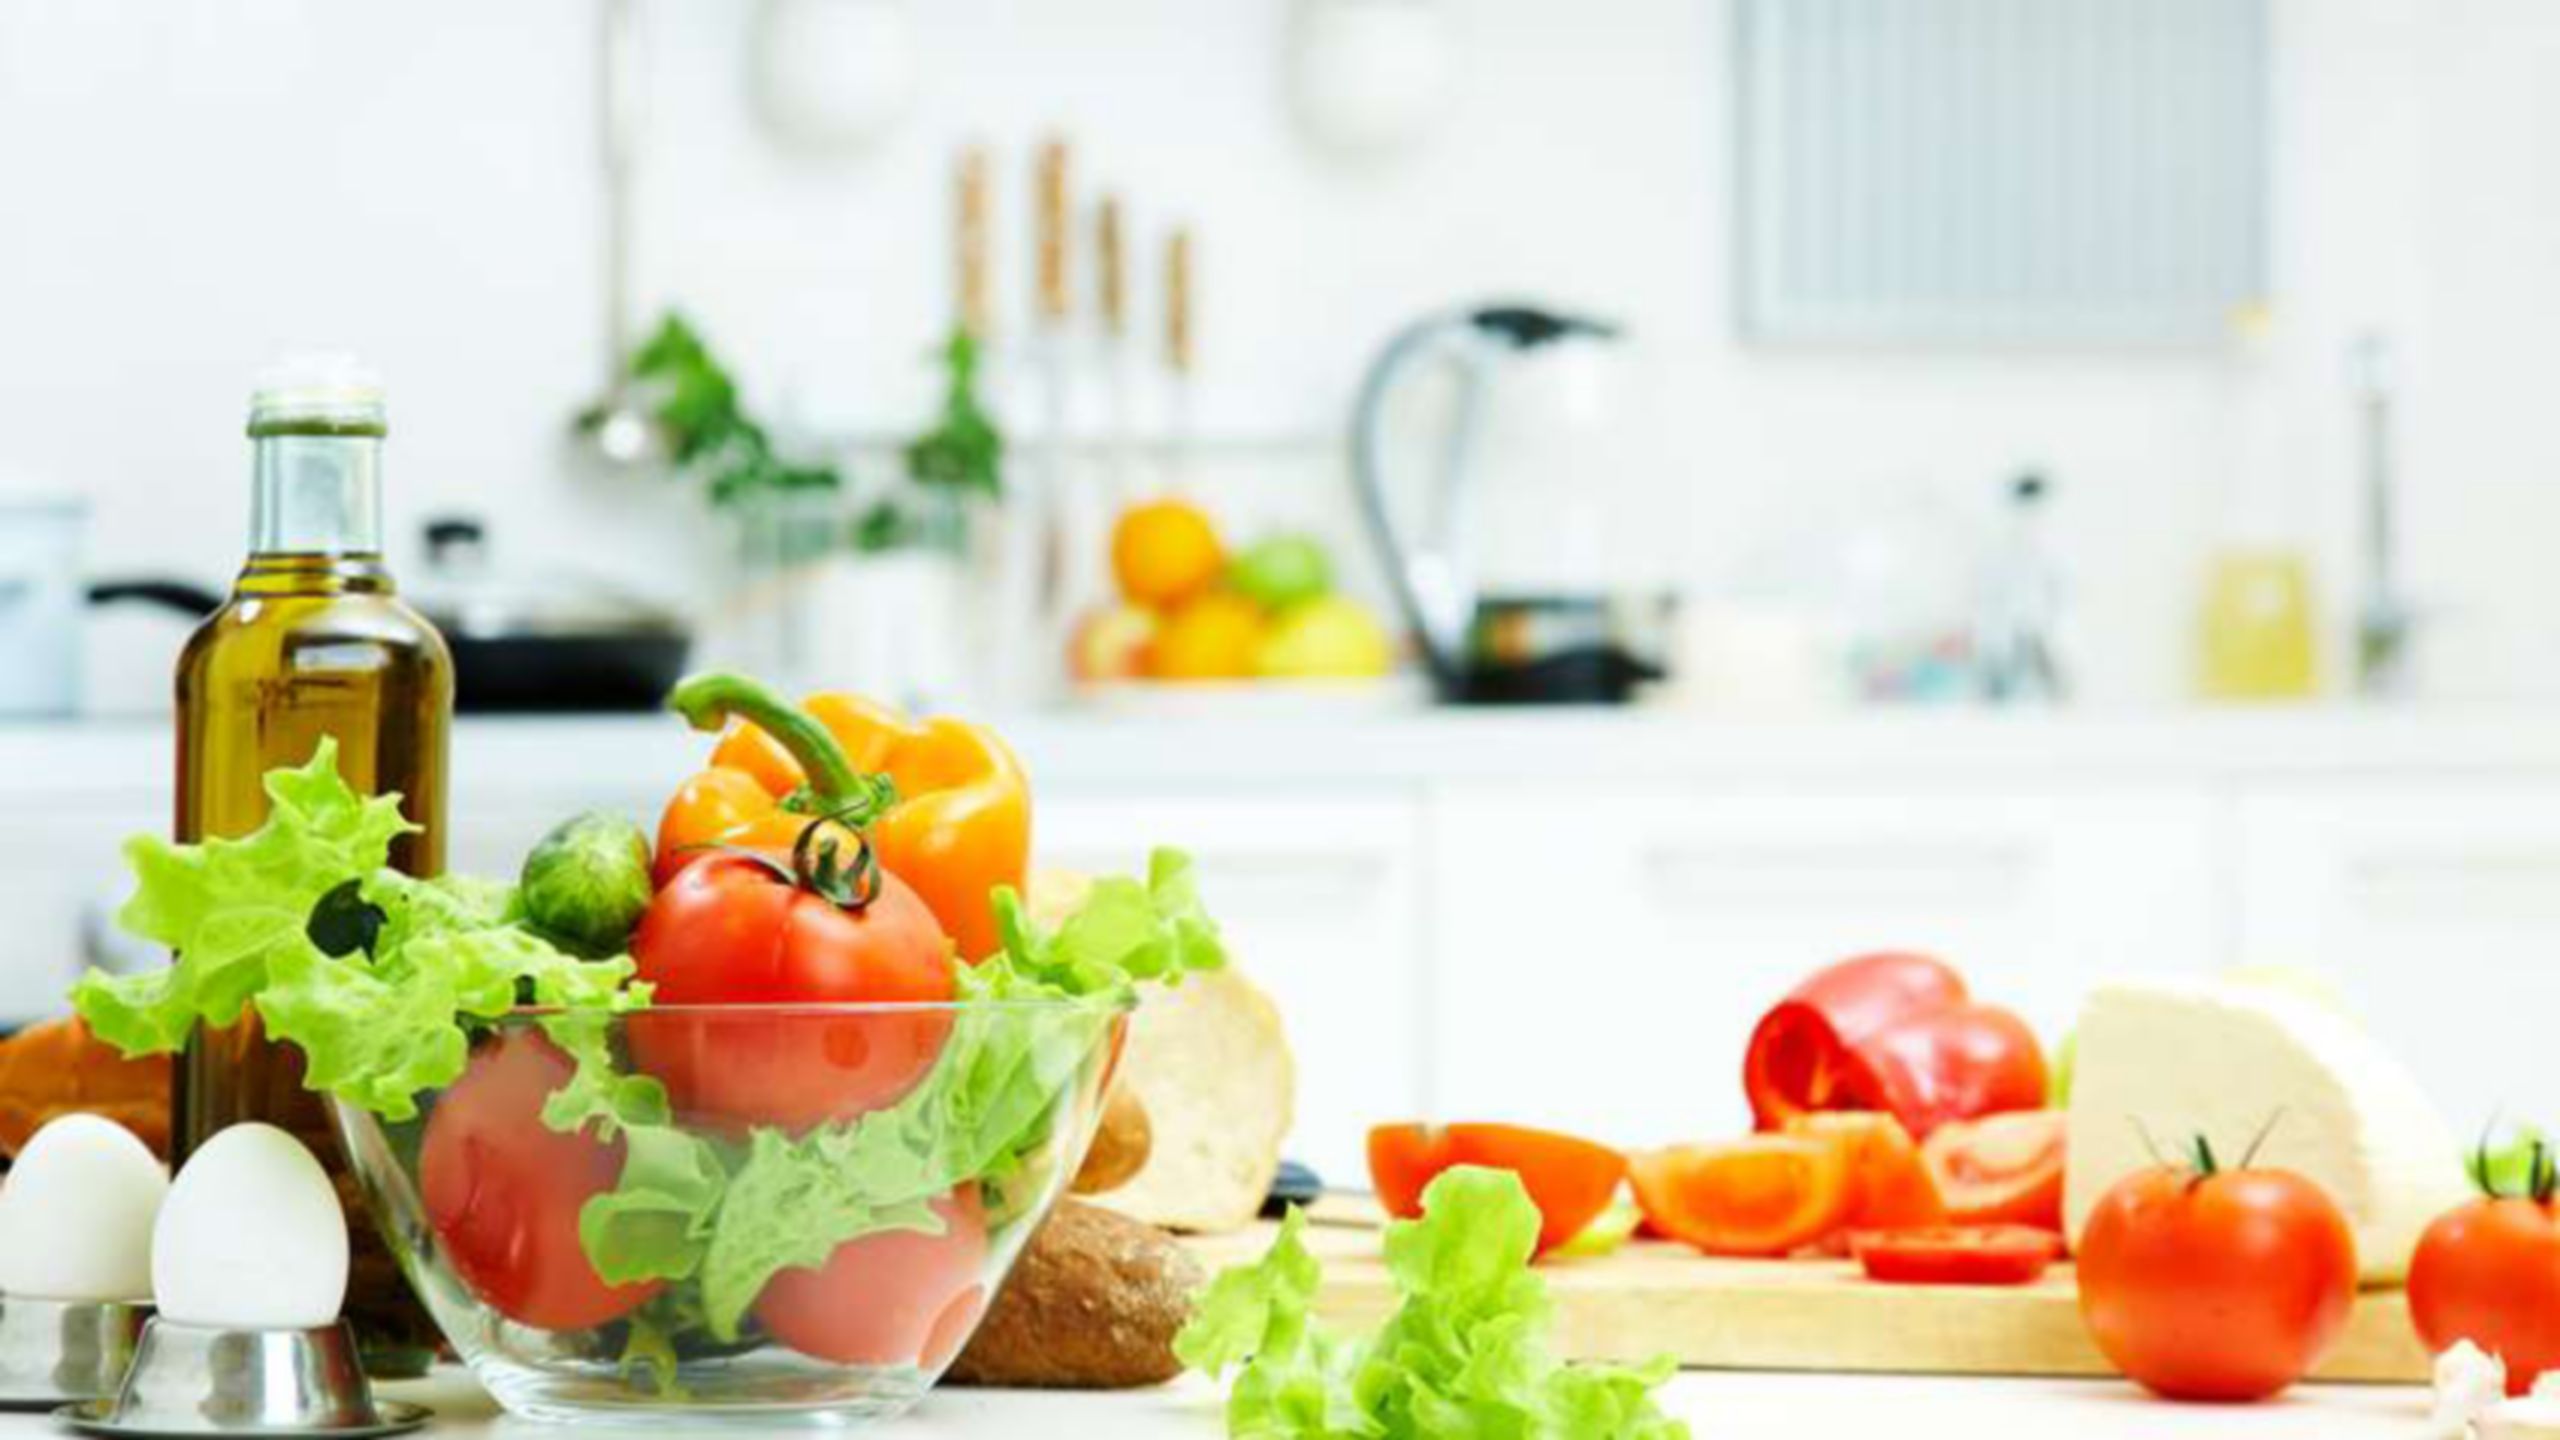 Zutaten für einen Salat, einschließlich Tomaten, Blattsalat und Eiern auf einer Küchentheke